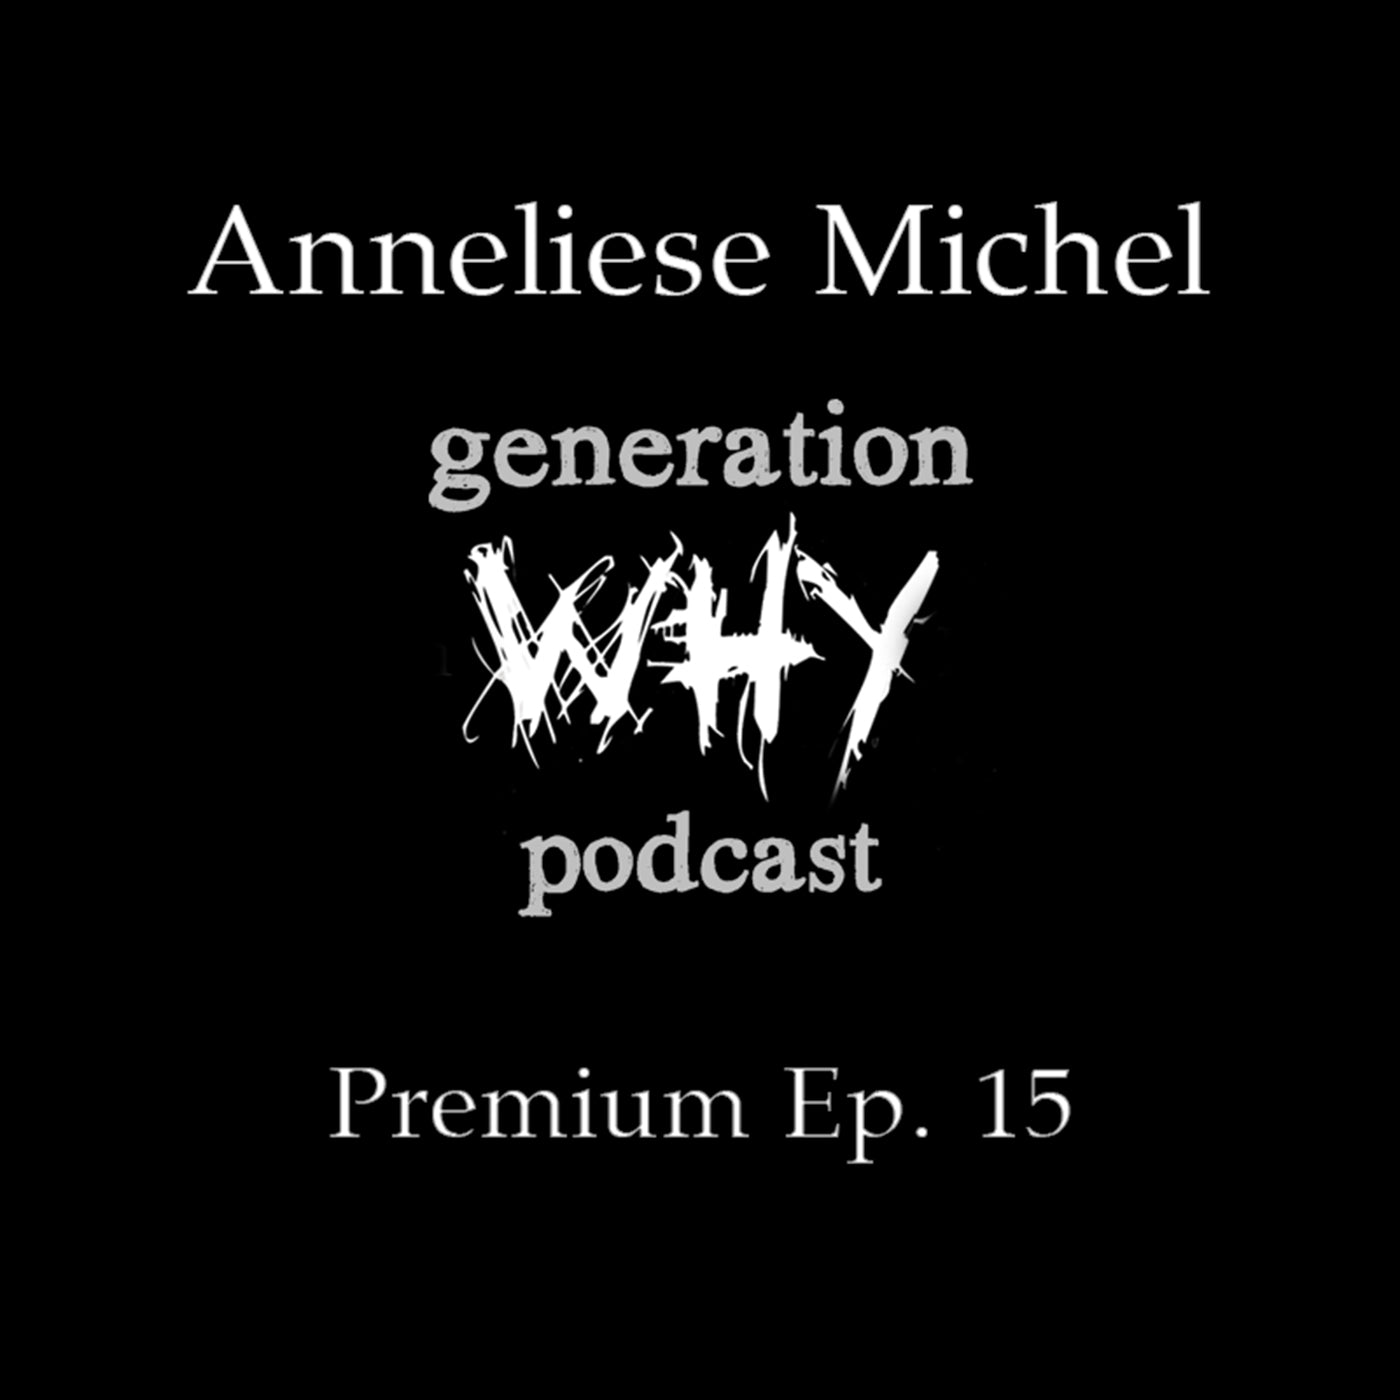 Premium Episode - Anneliese Michel